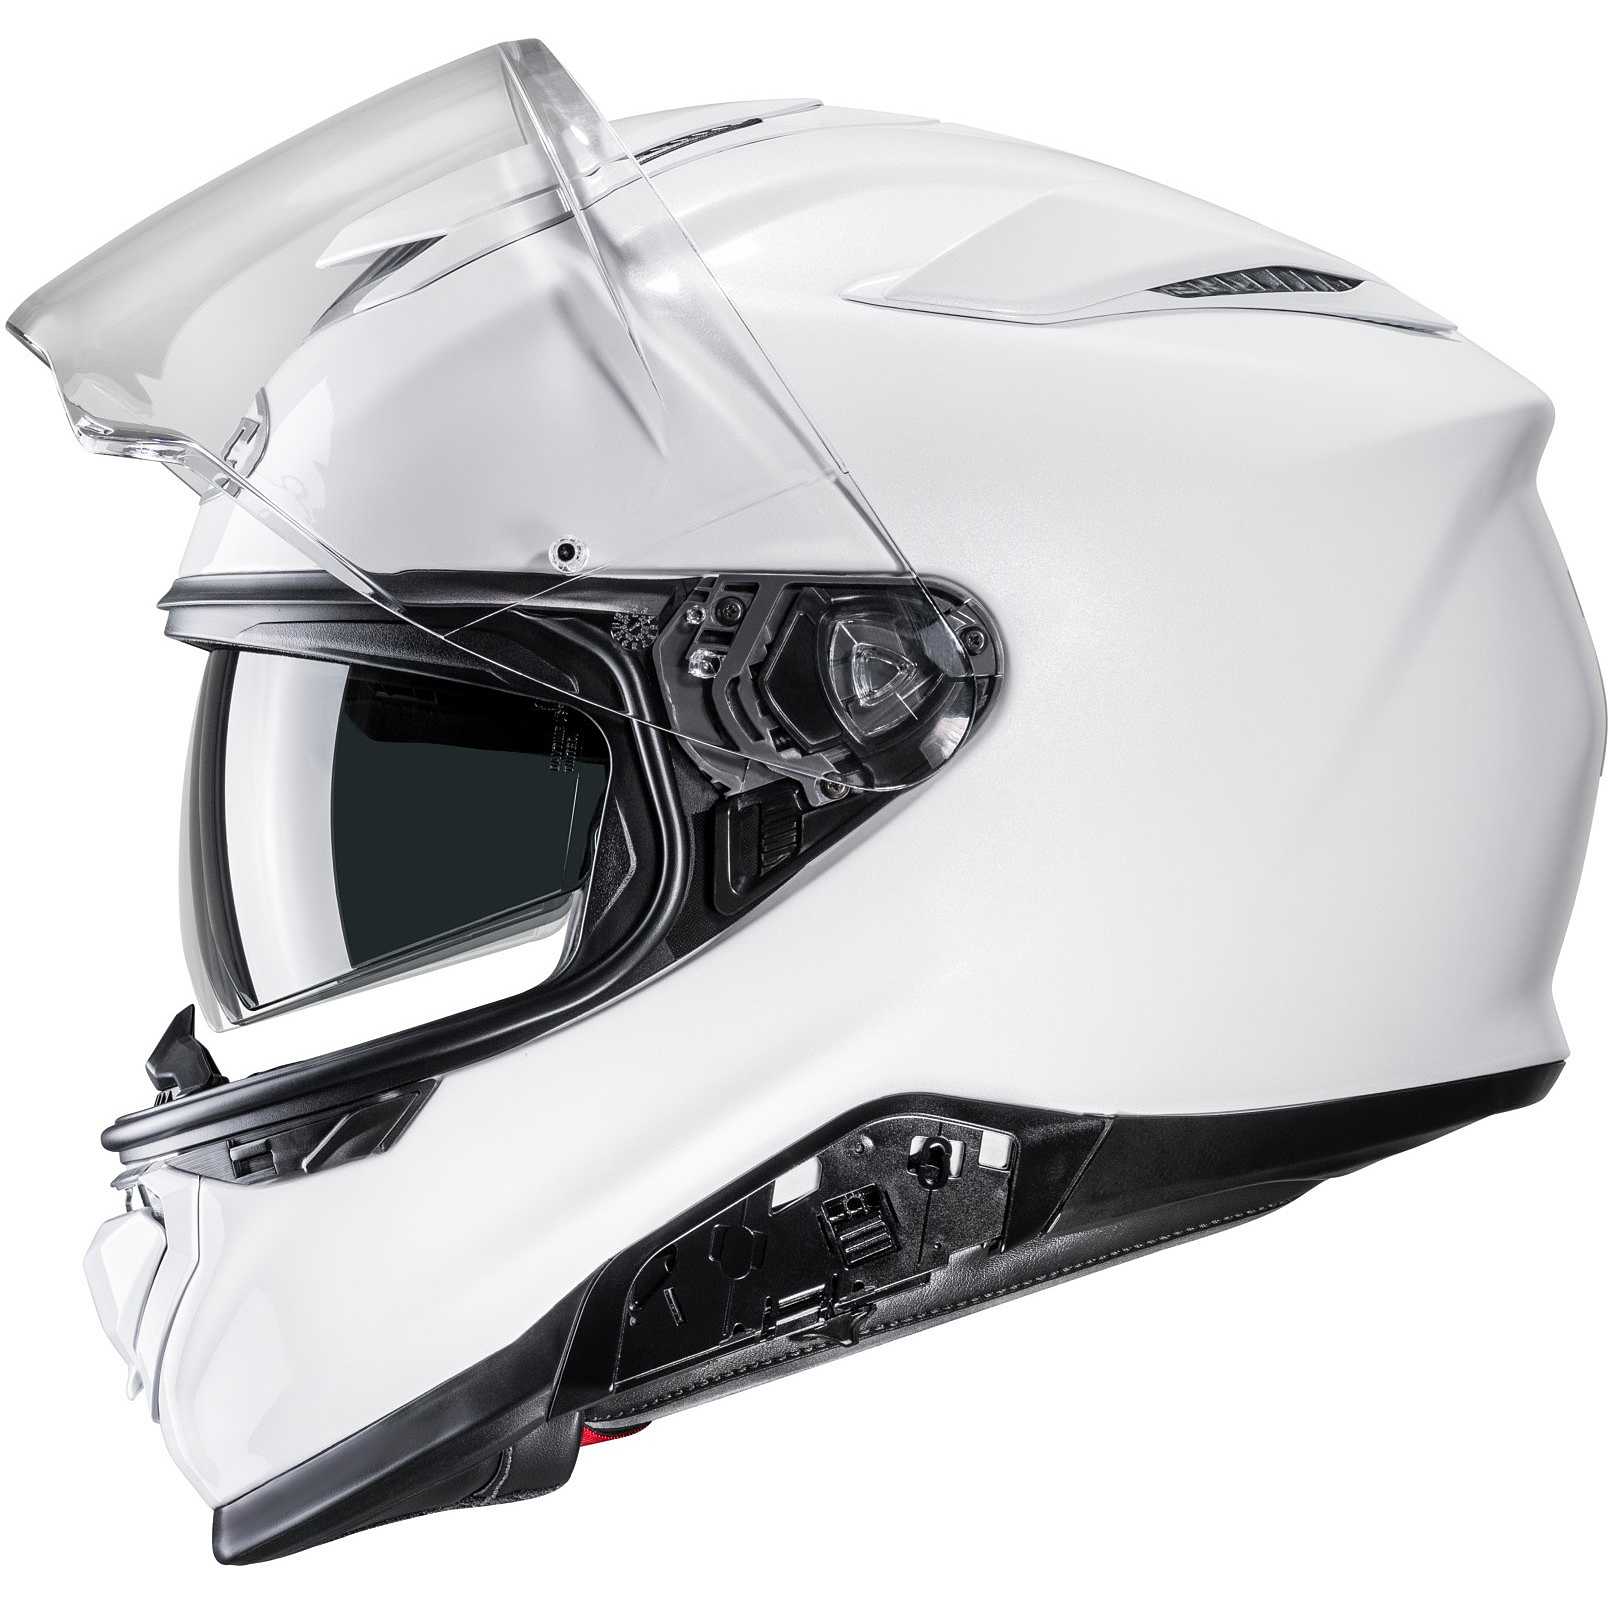 Casque Moto Intégral Hjc RPHA 71 Blanc Perle Vente en Ligne